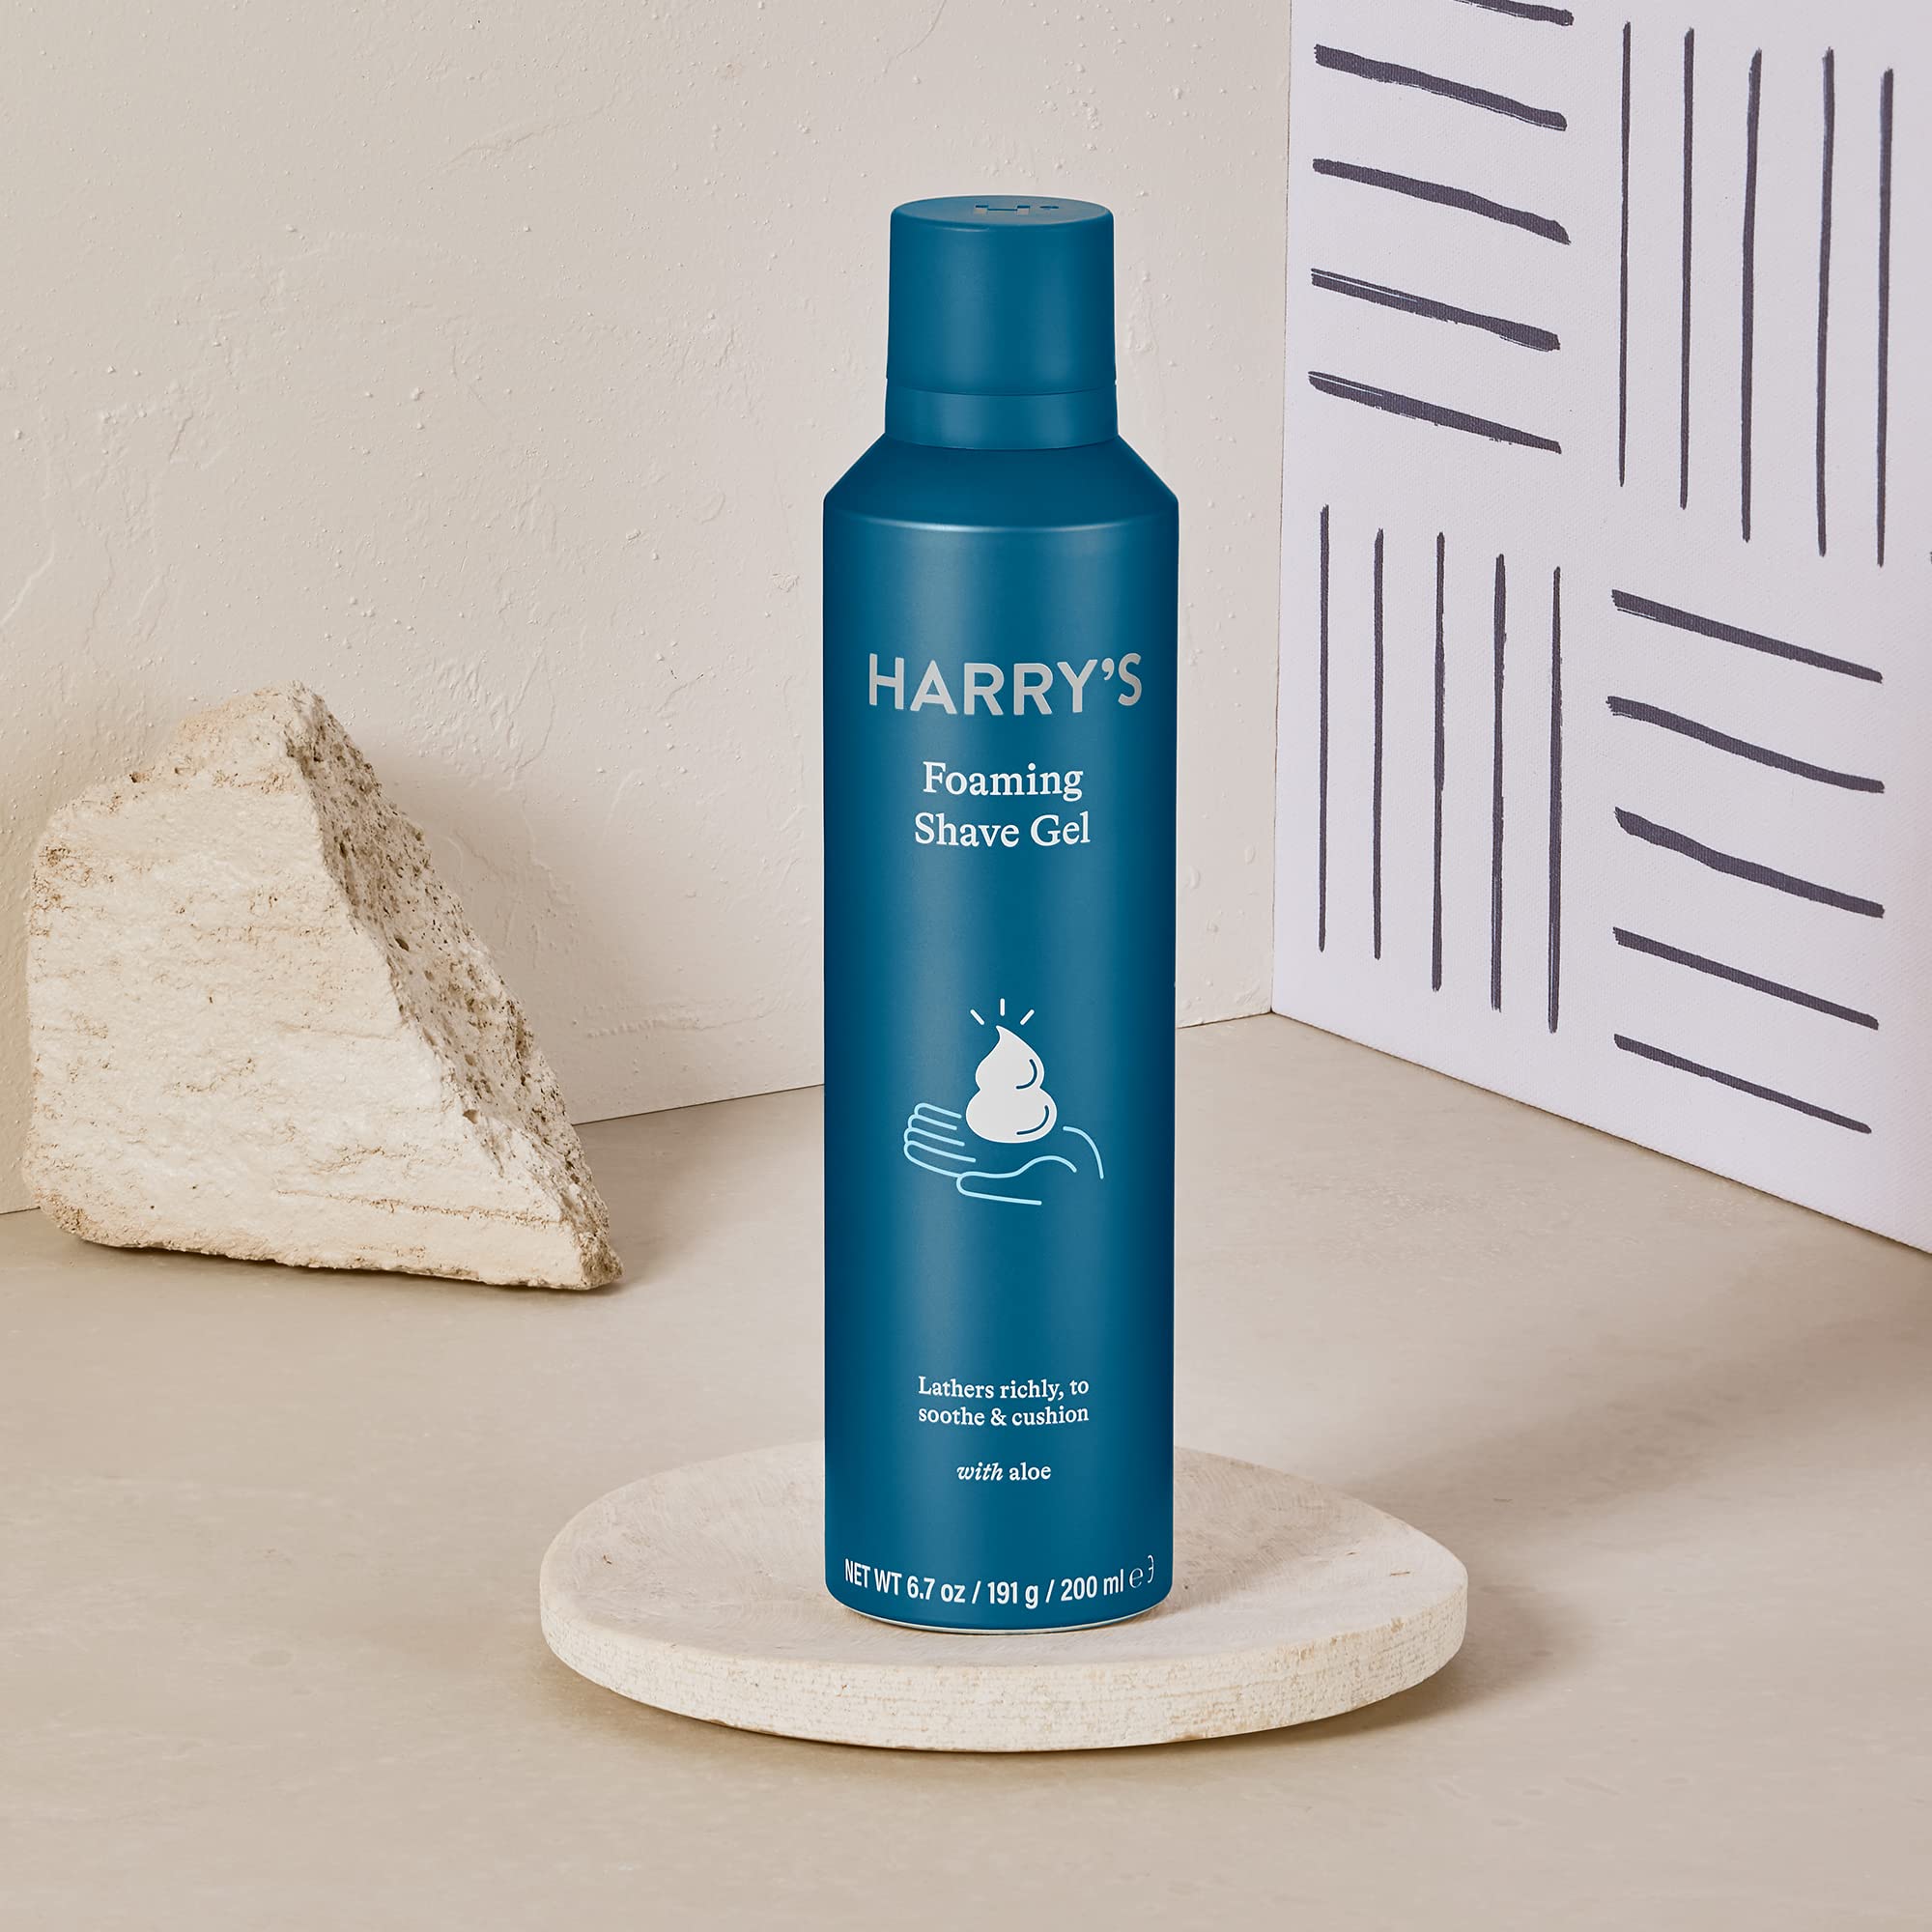 Harry's Shave Gel - Shaving Gel with an Aloe Enriched Formula - 3 pack (6.7oz)